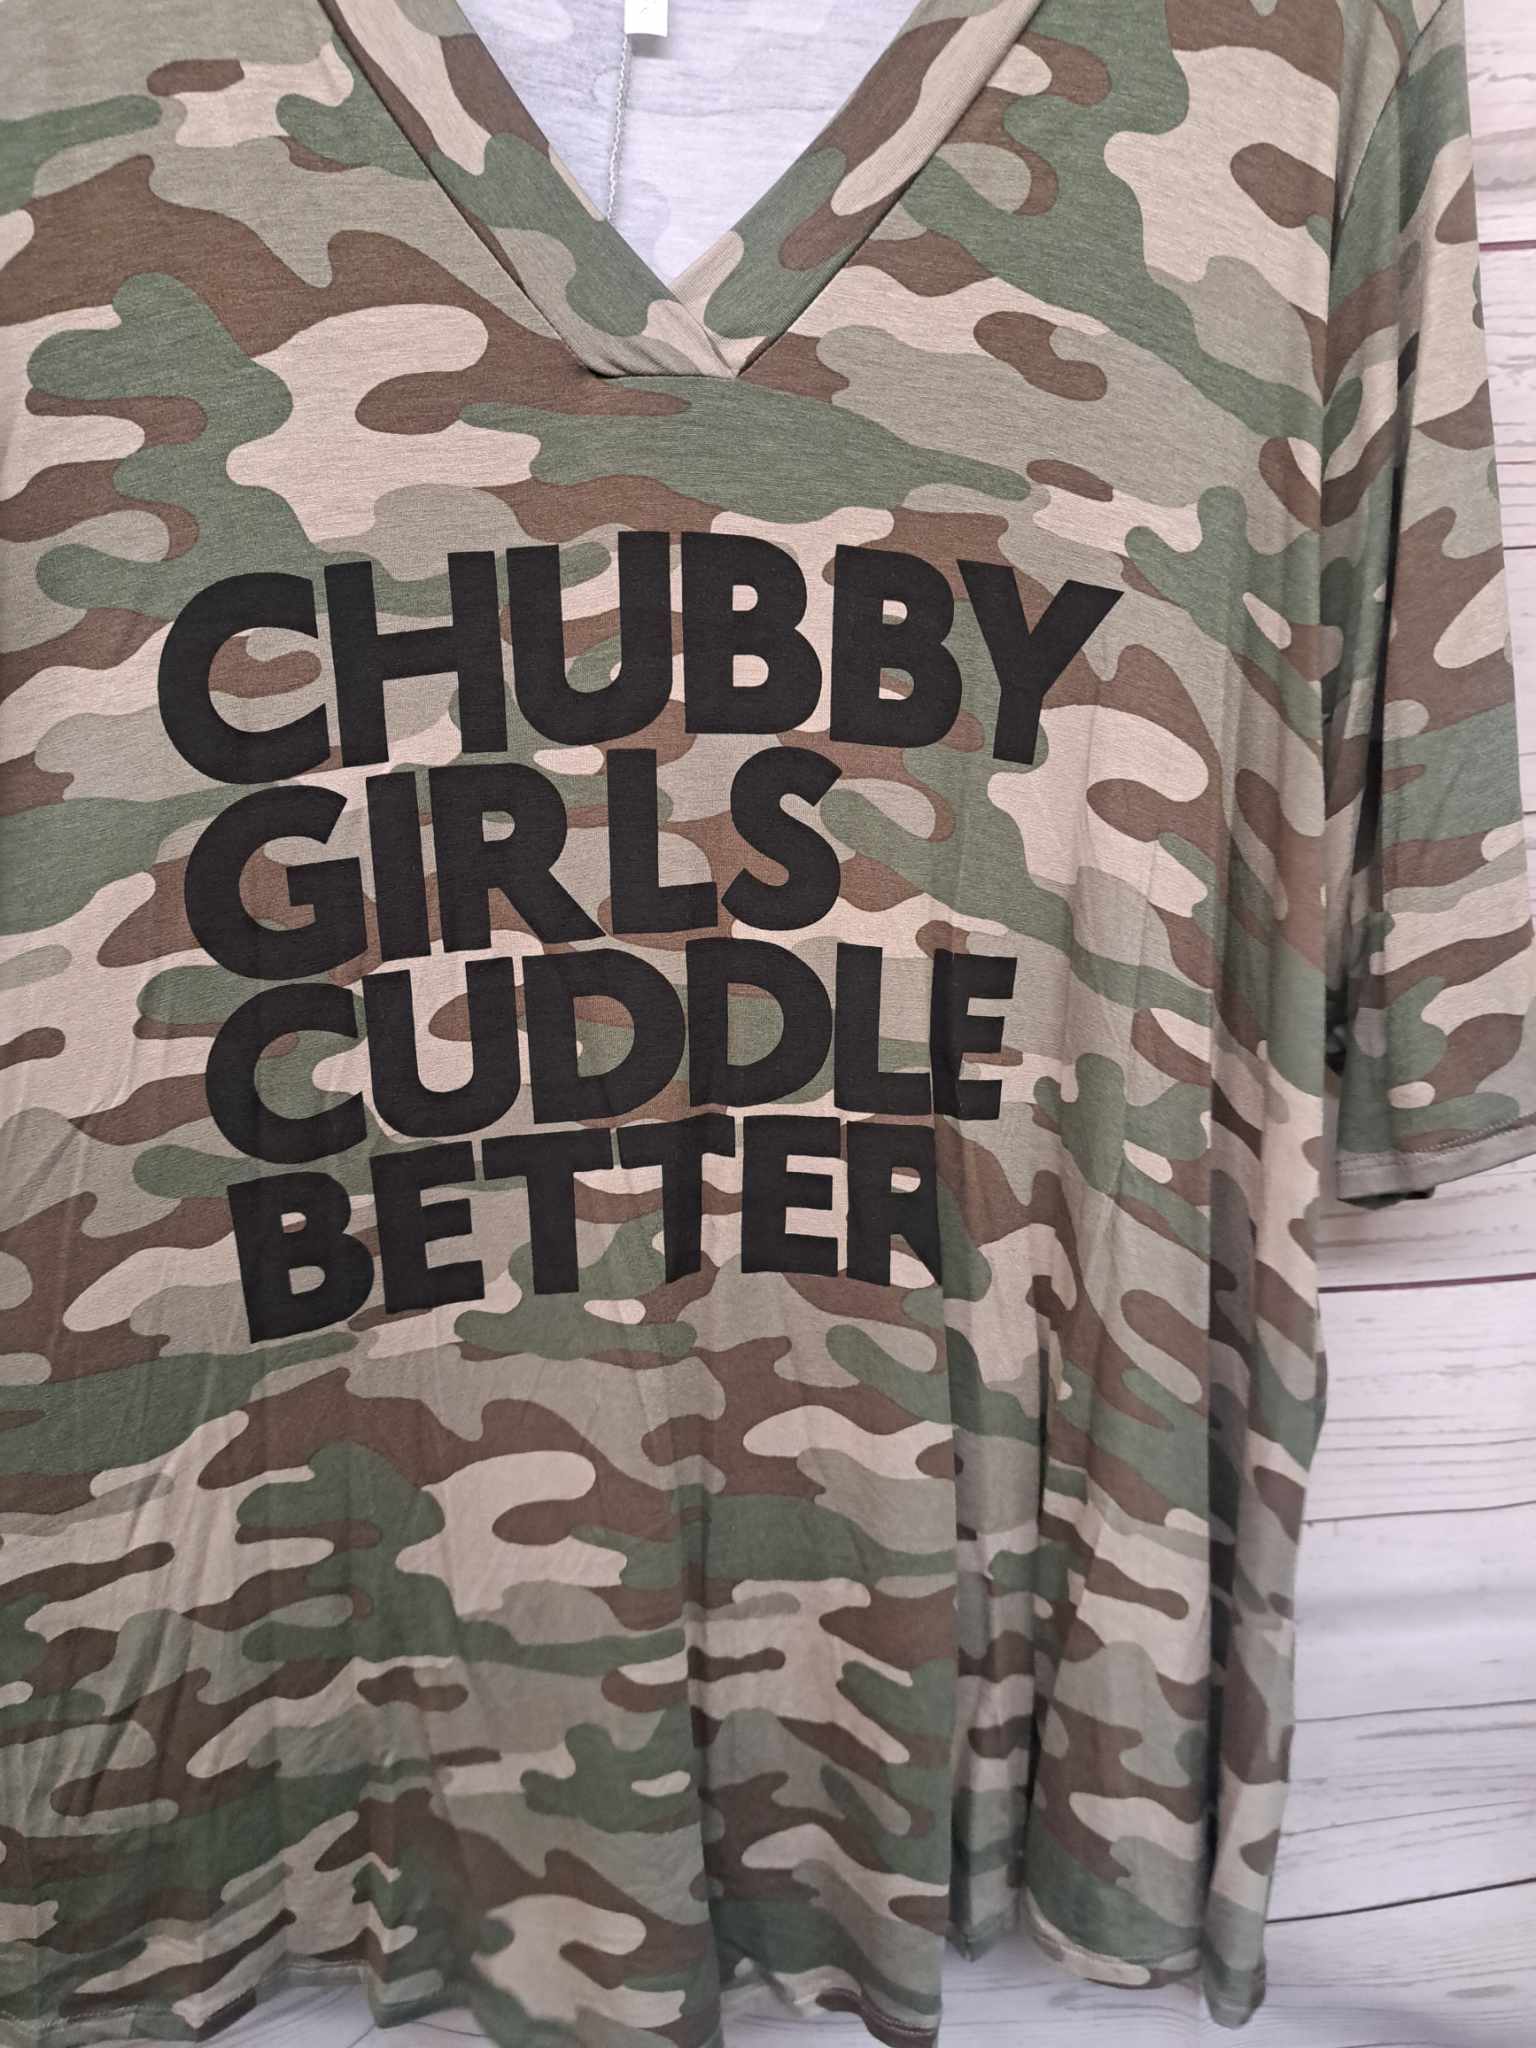 PSFU Camo Chubby Girls Cuddle Better Tee T Shirt Top Tunic